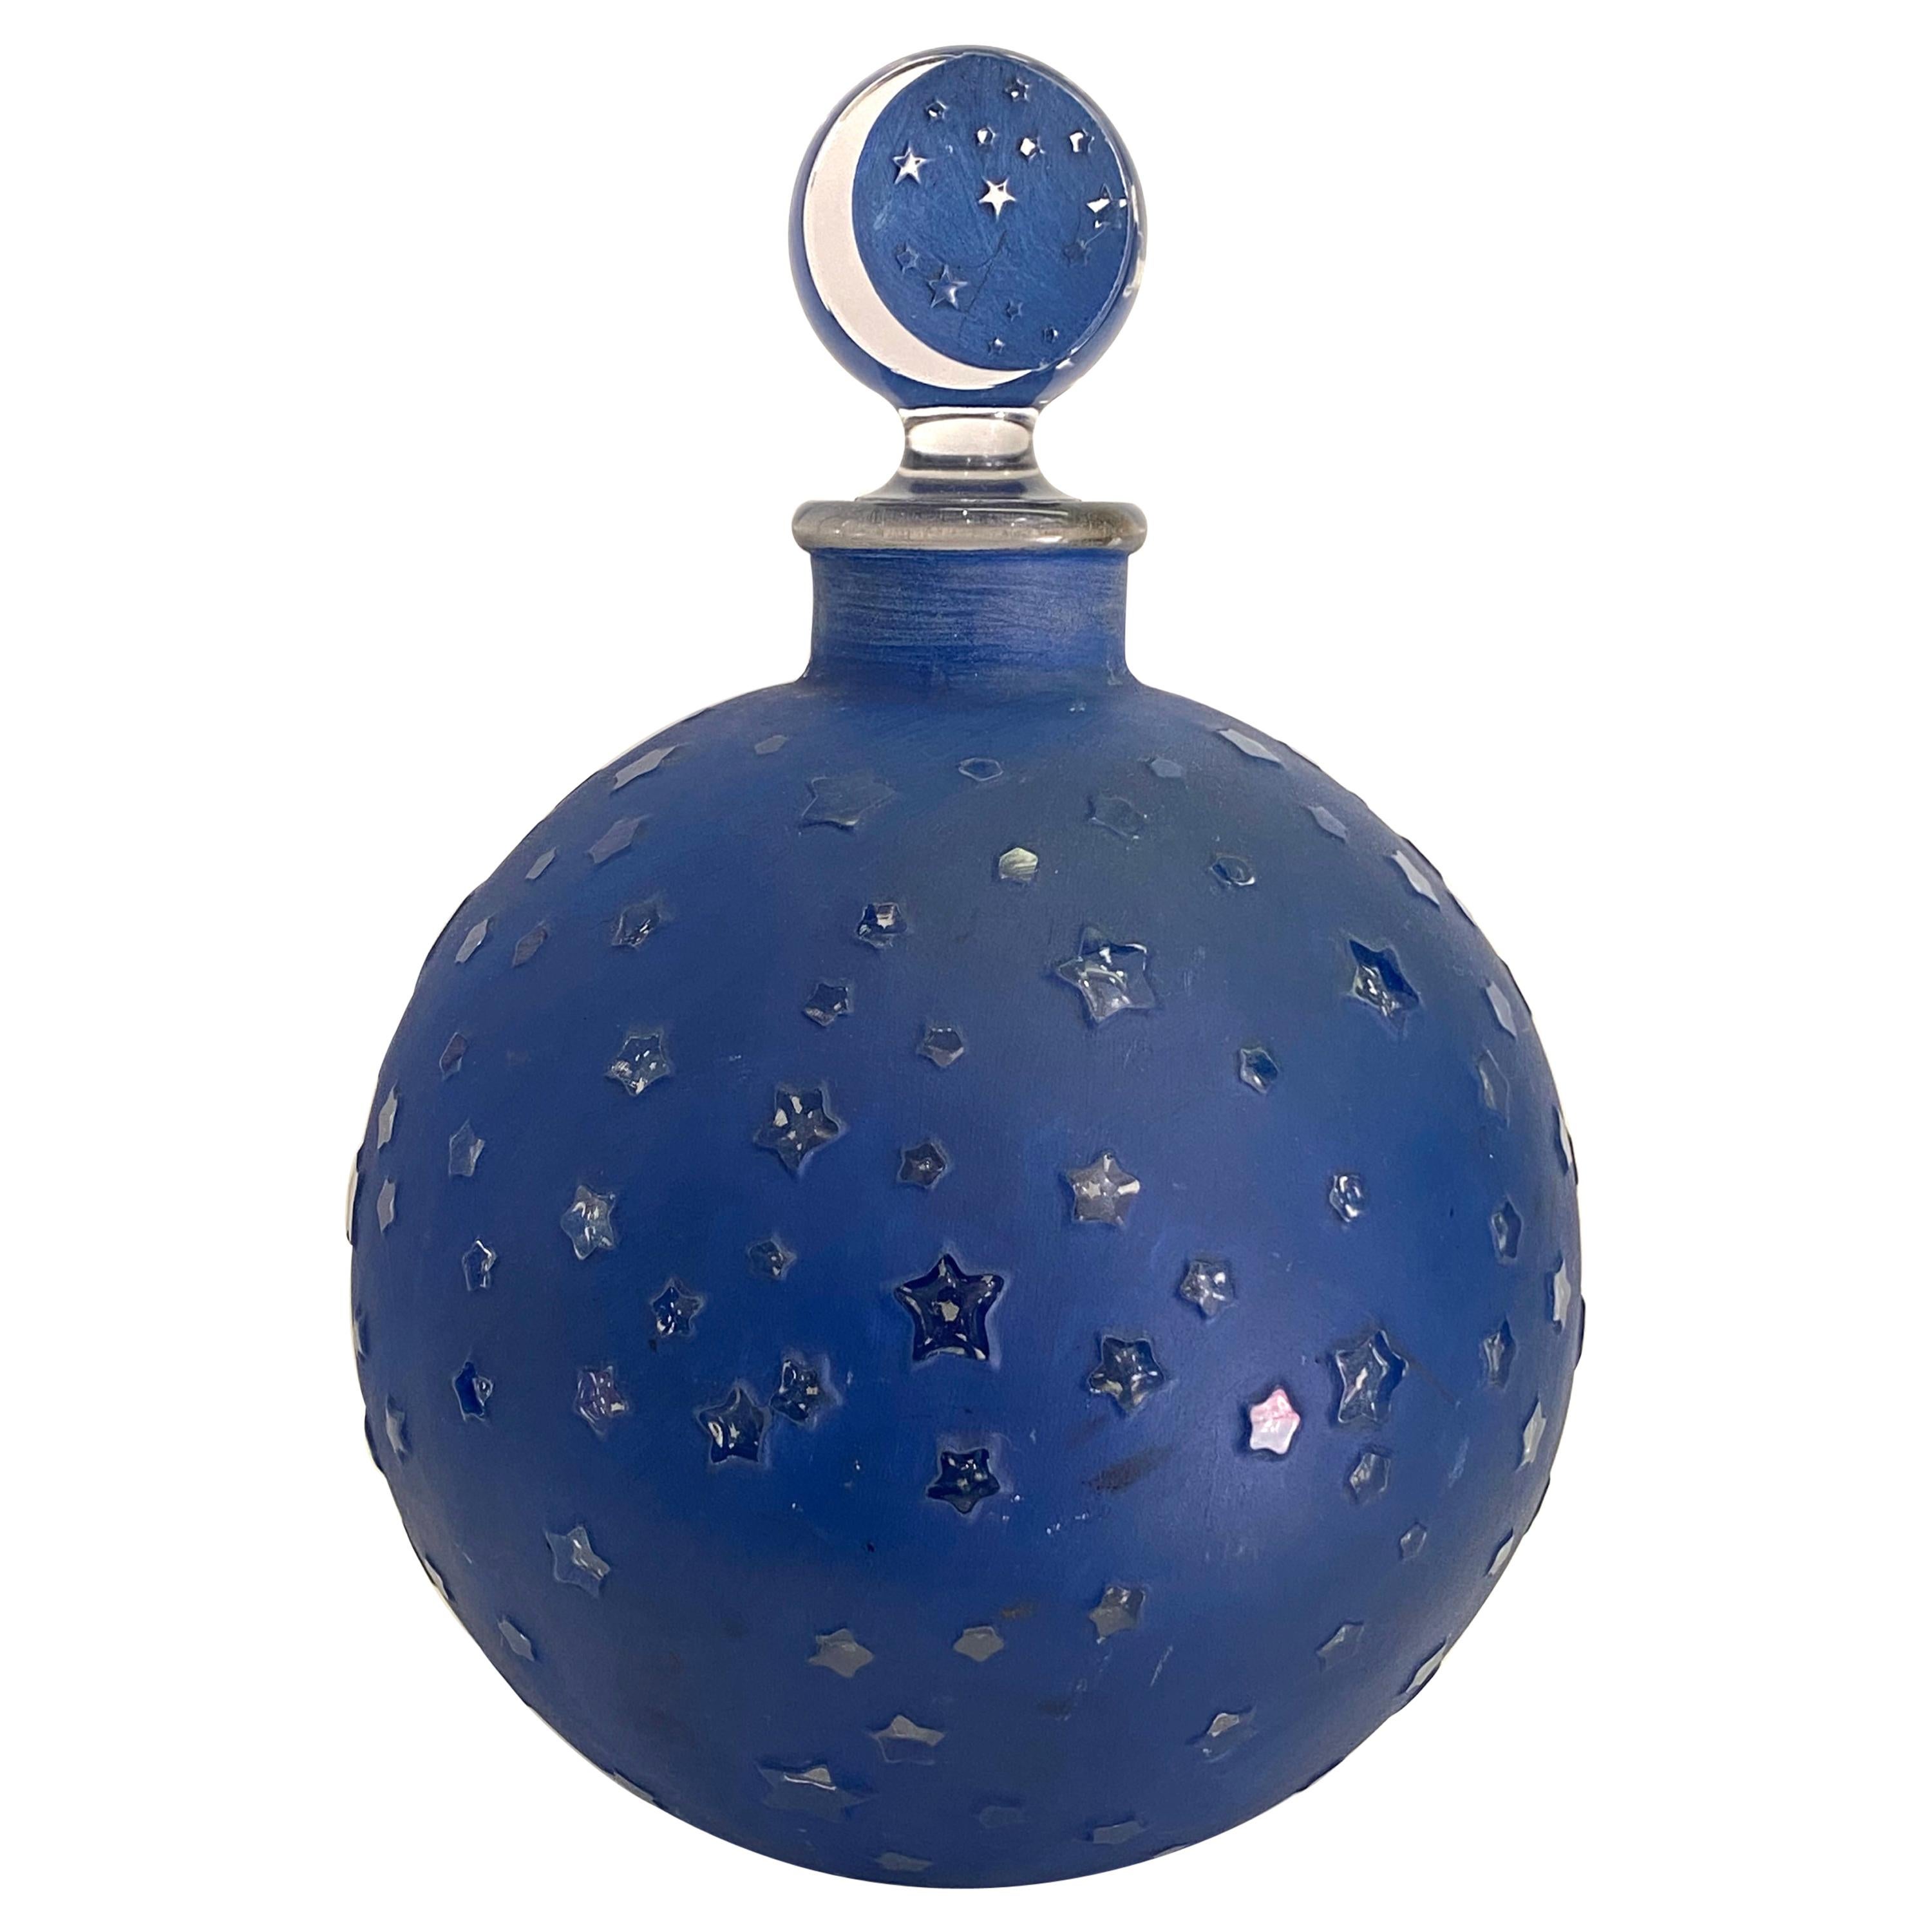 1924 Rene Lalique Dans La Nuit Perfume Bottle for Worth Blue Patina, Big Size